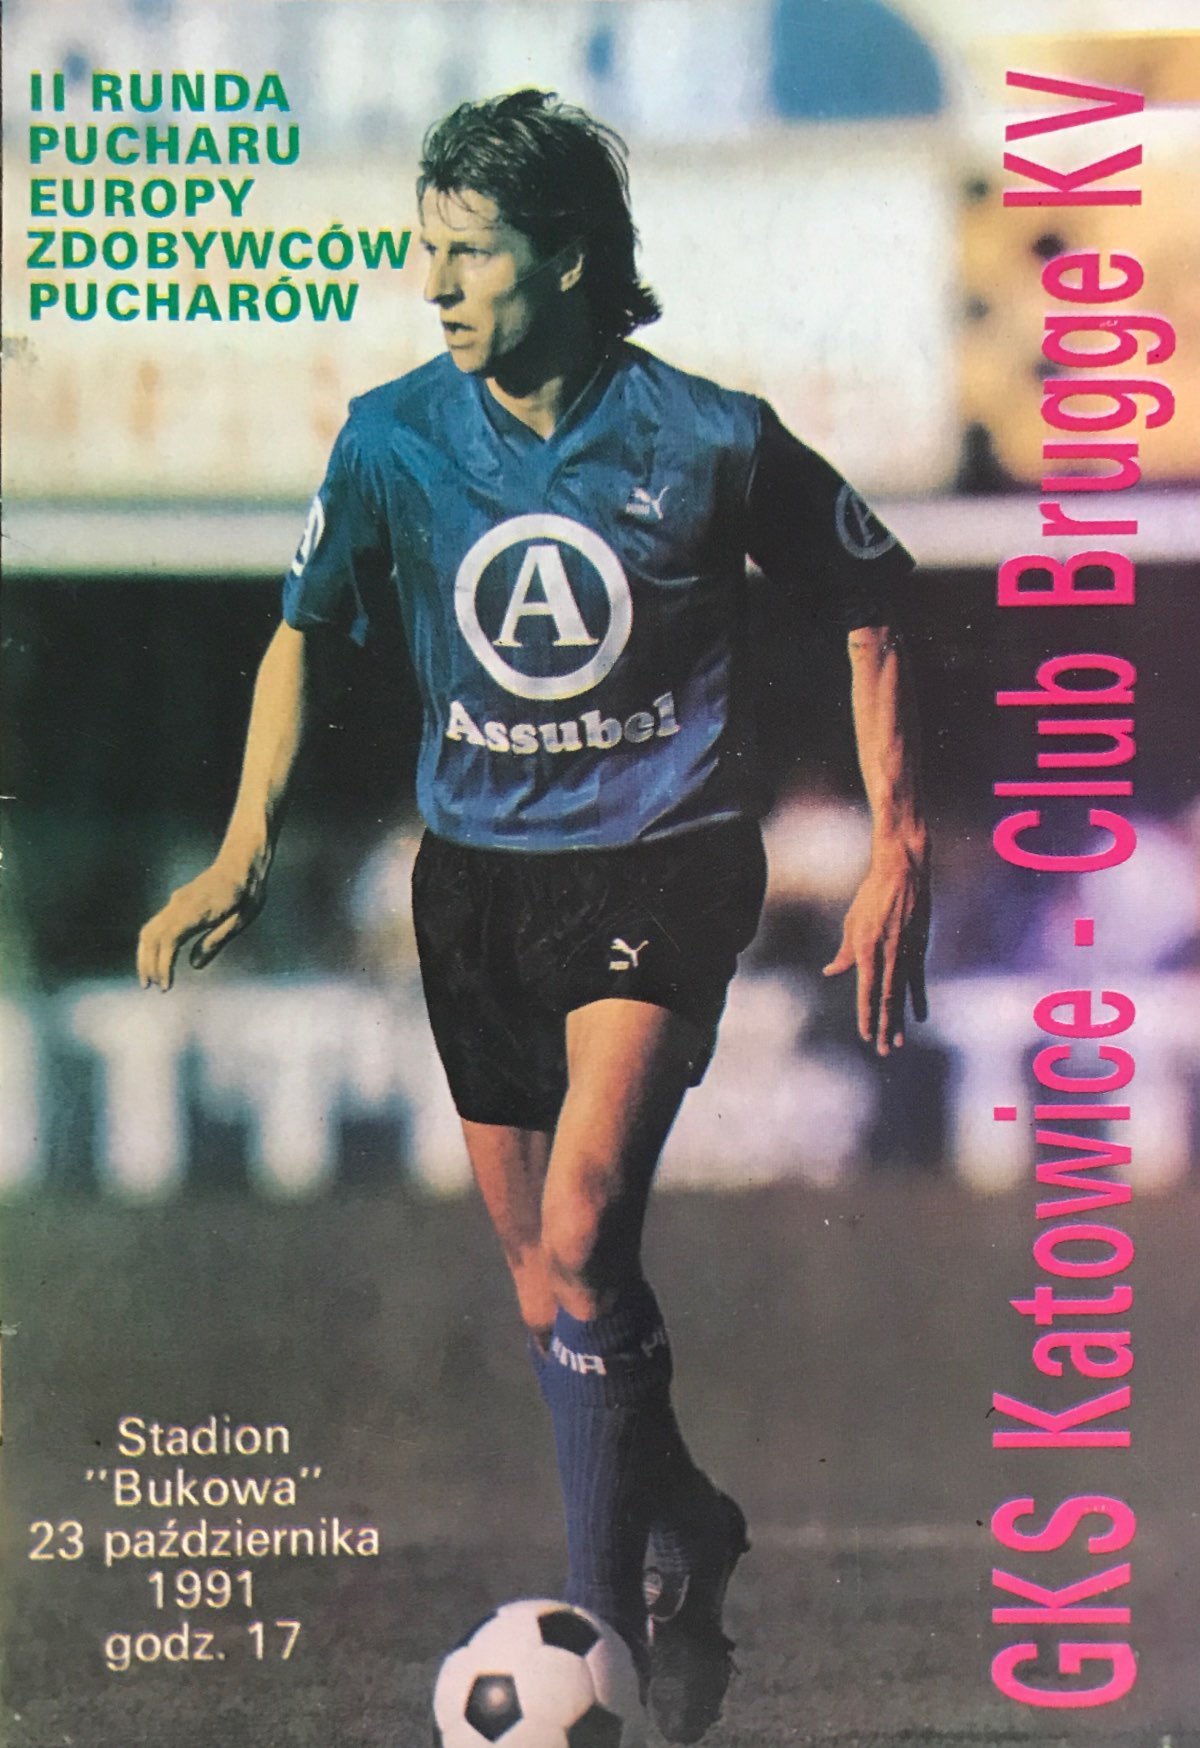 Program meczowy GKS Katowice - Club Brugge 0:1 (23.10.1991).